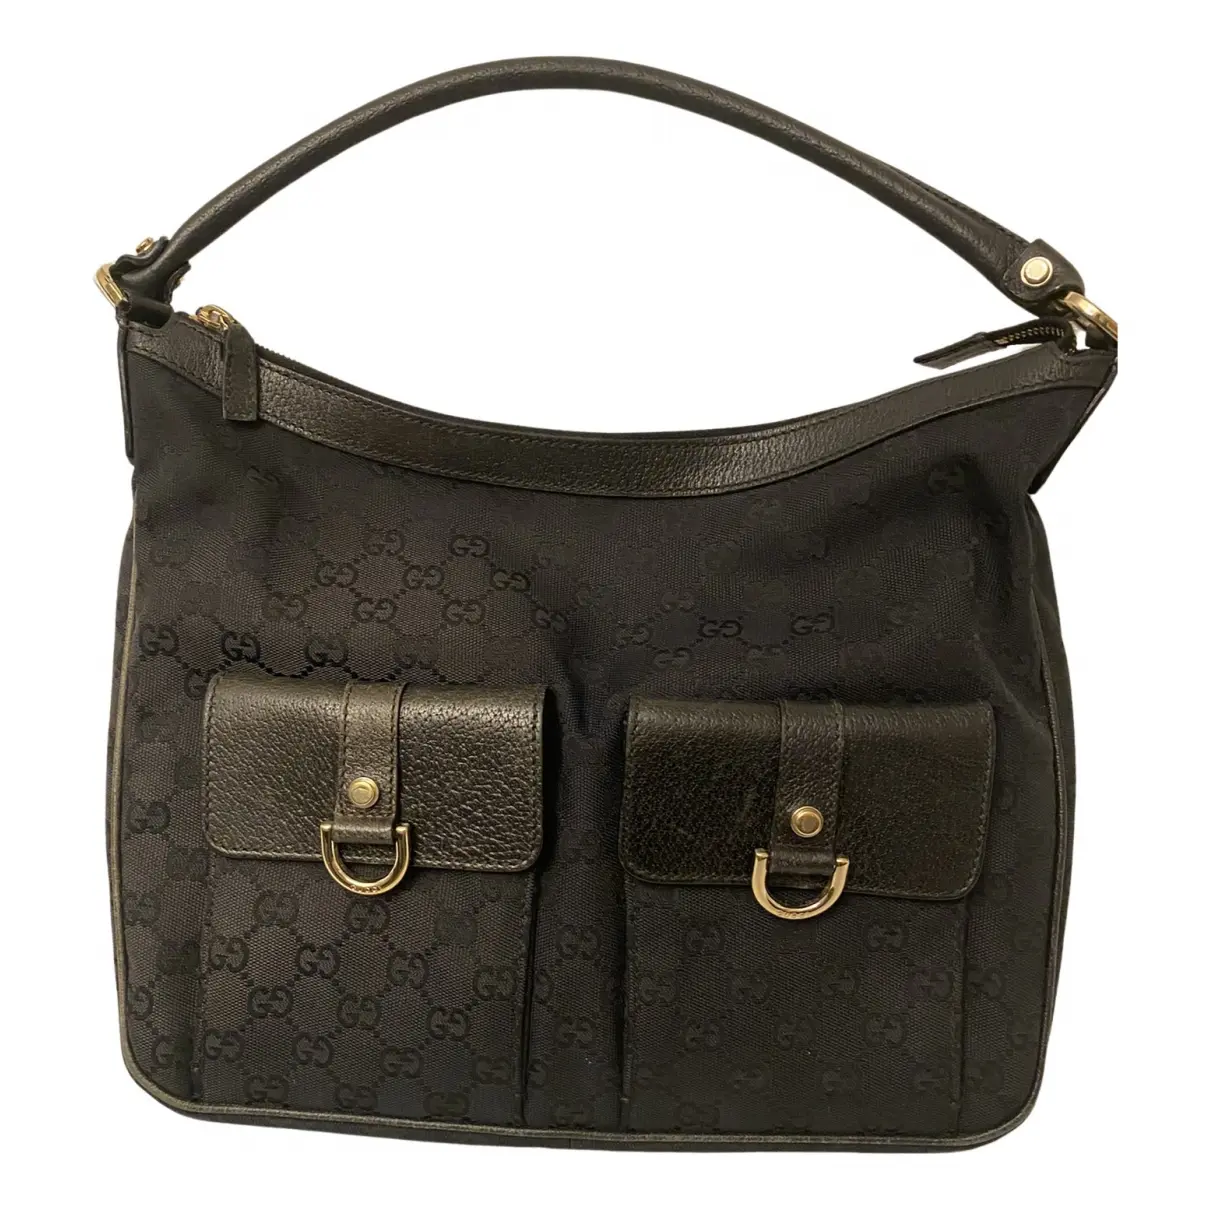 Abbey cloth handbag Gucci